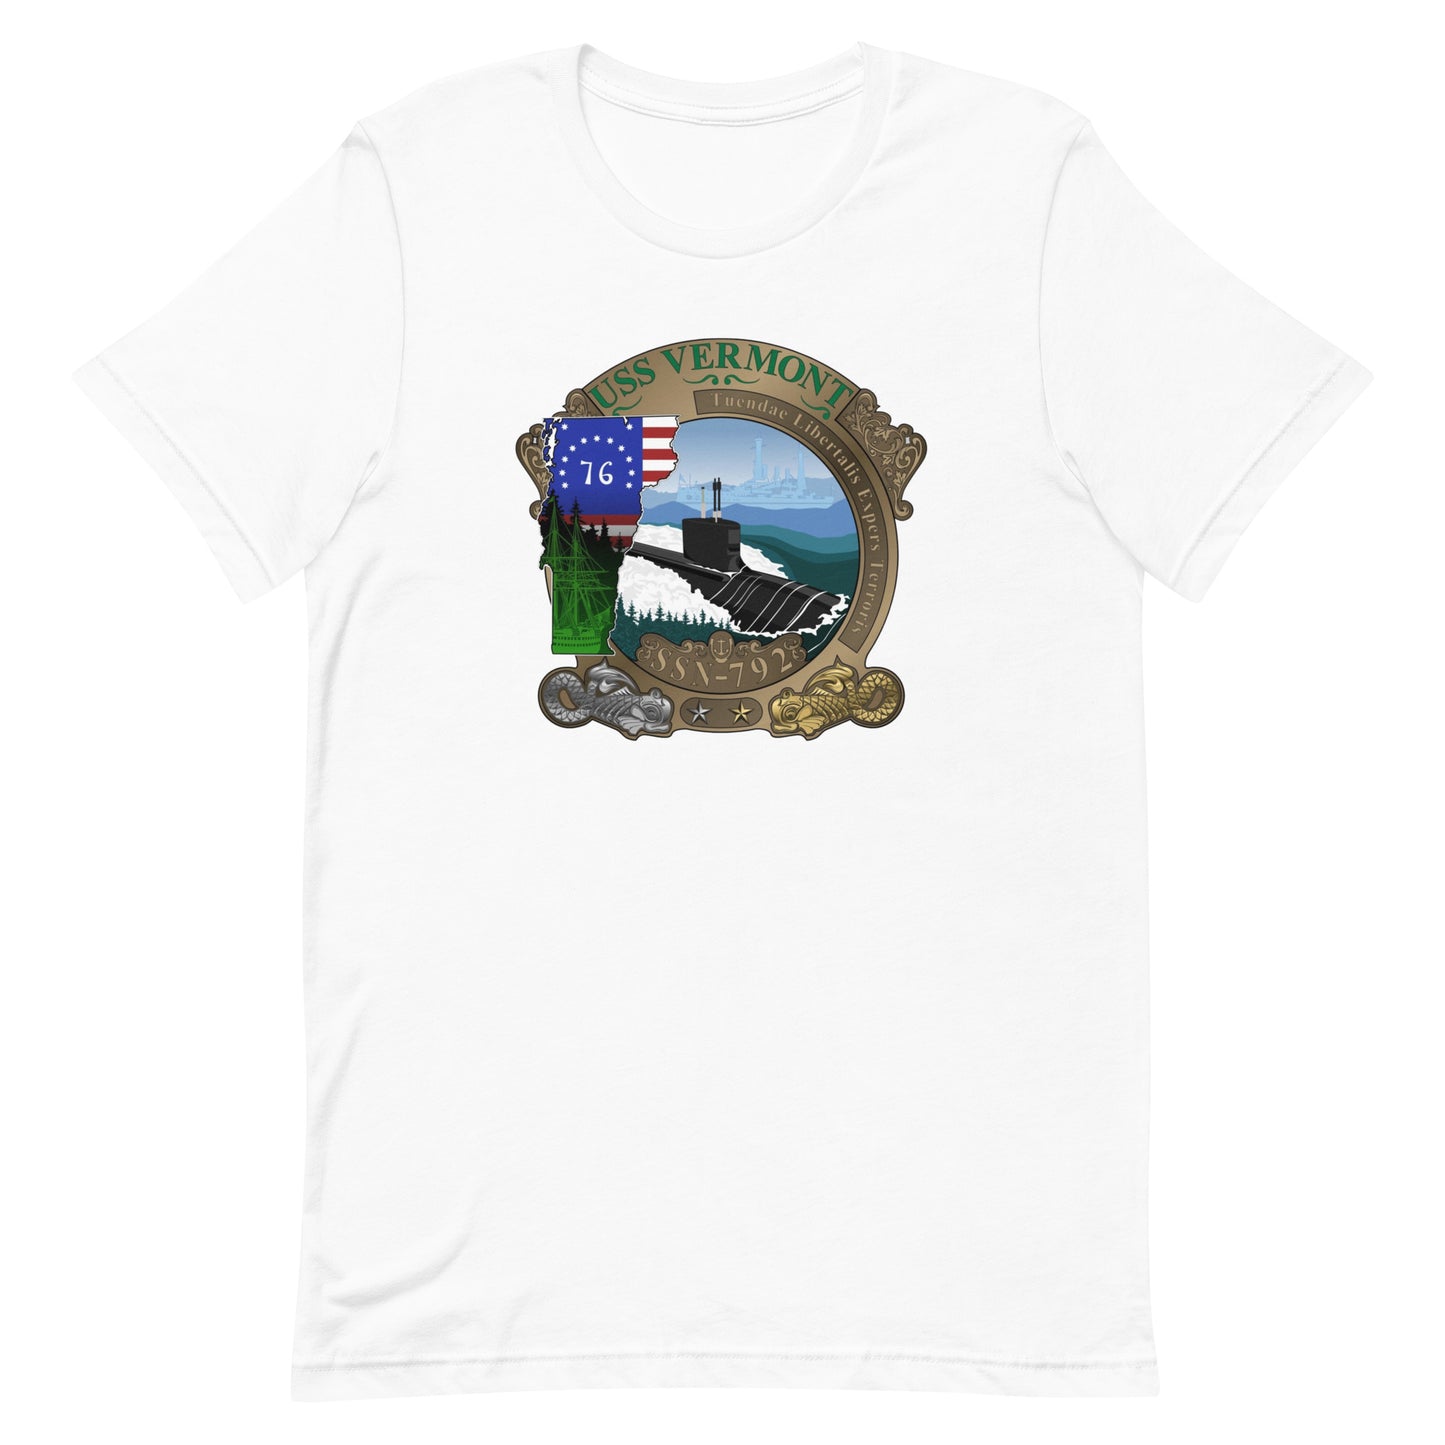 U.S.S. Vermont NAVY Tribute Series T-Shirt